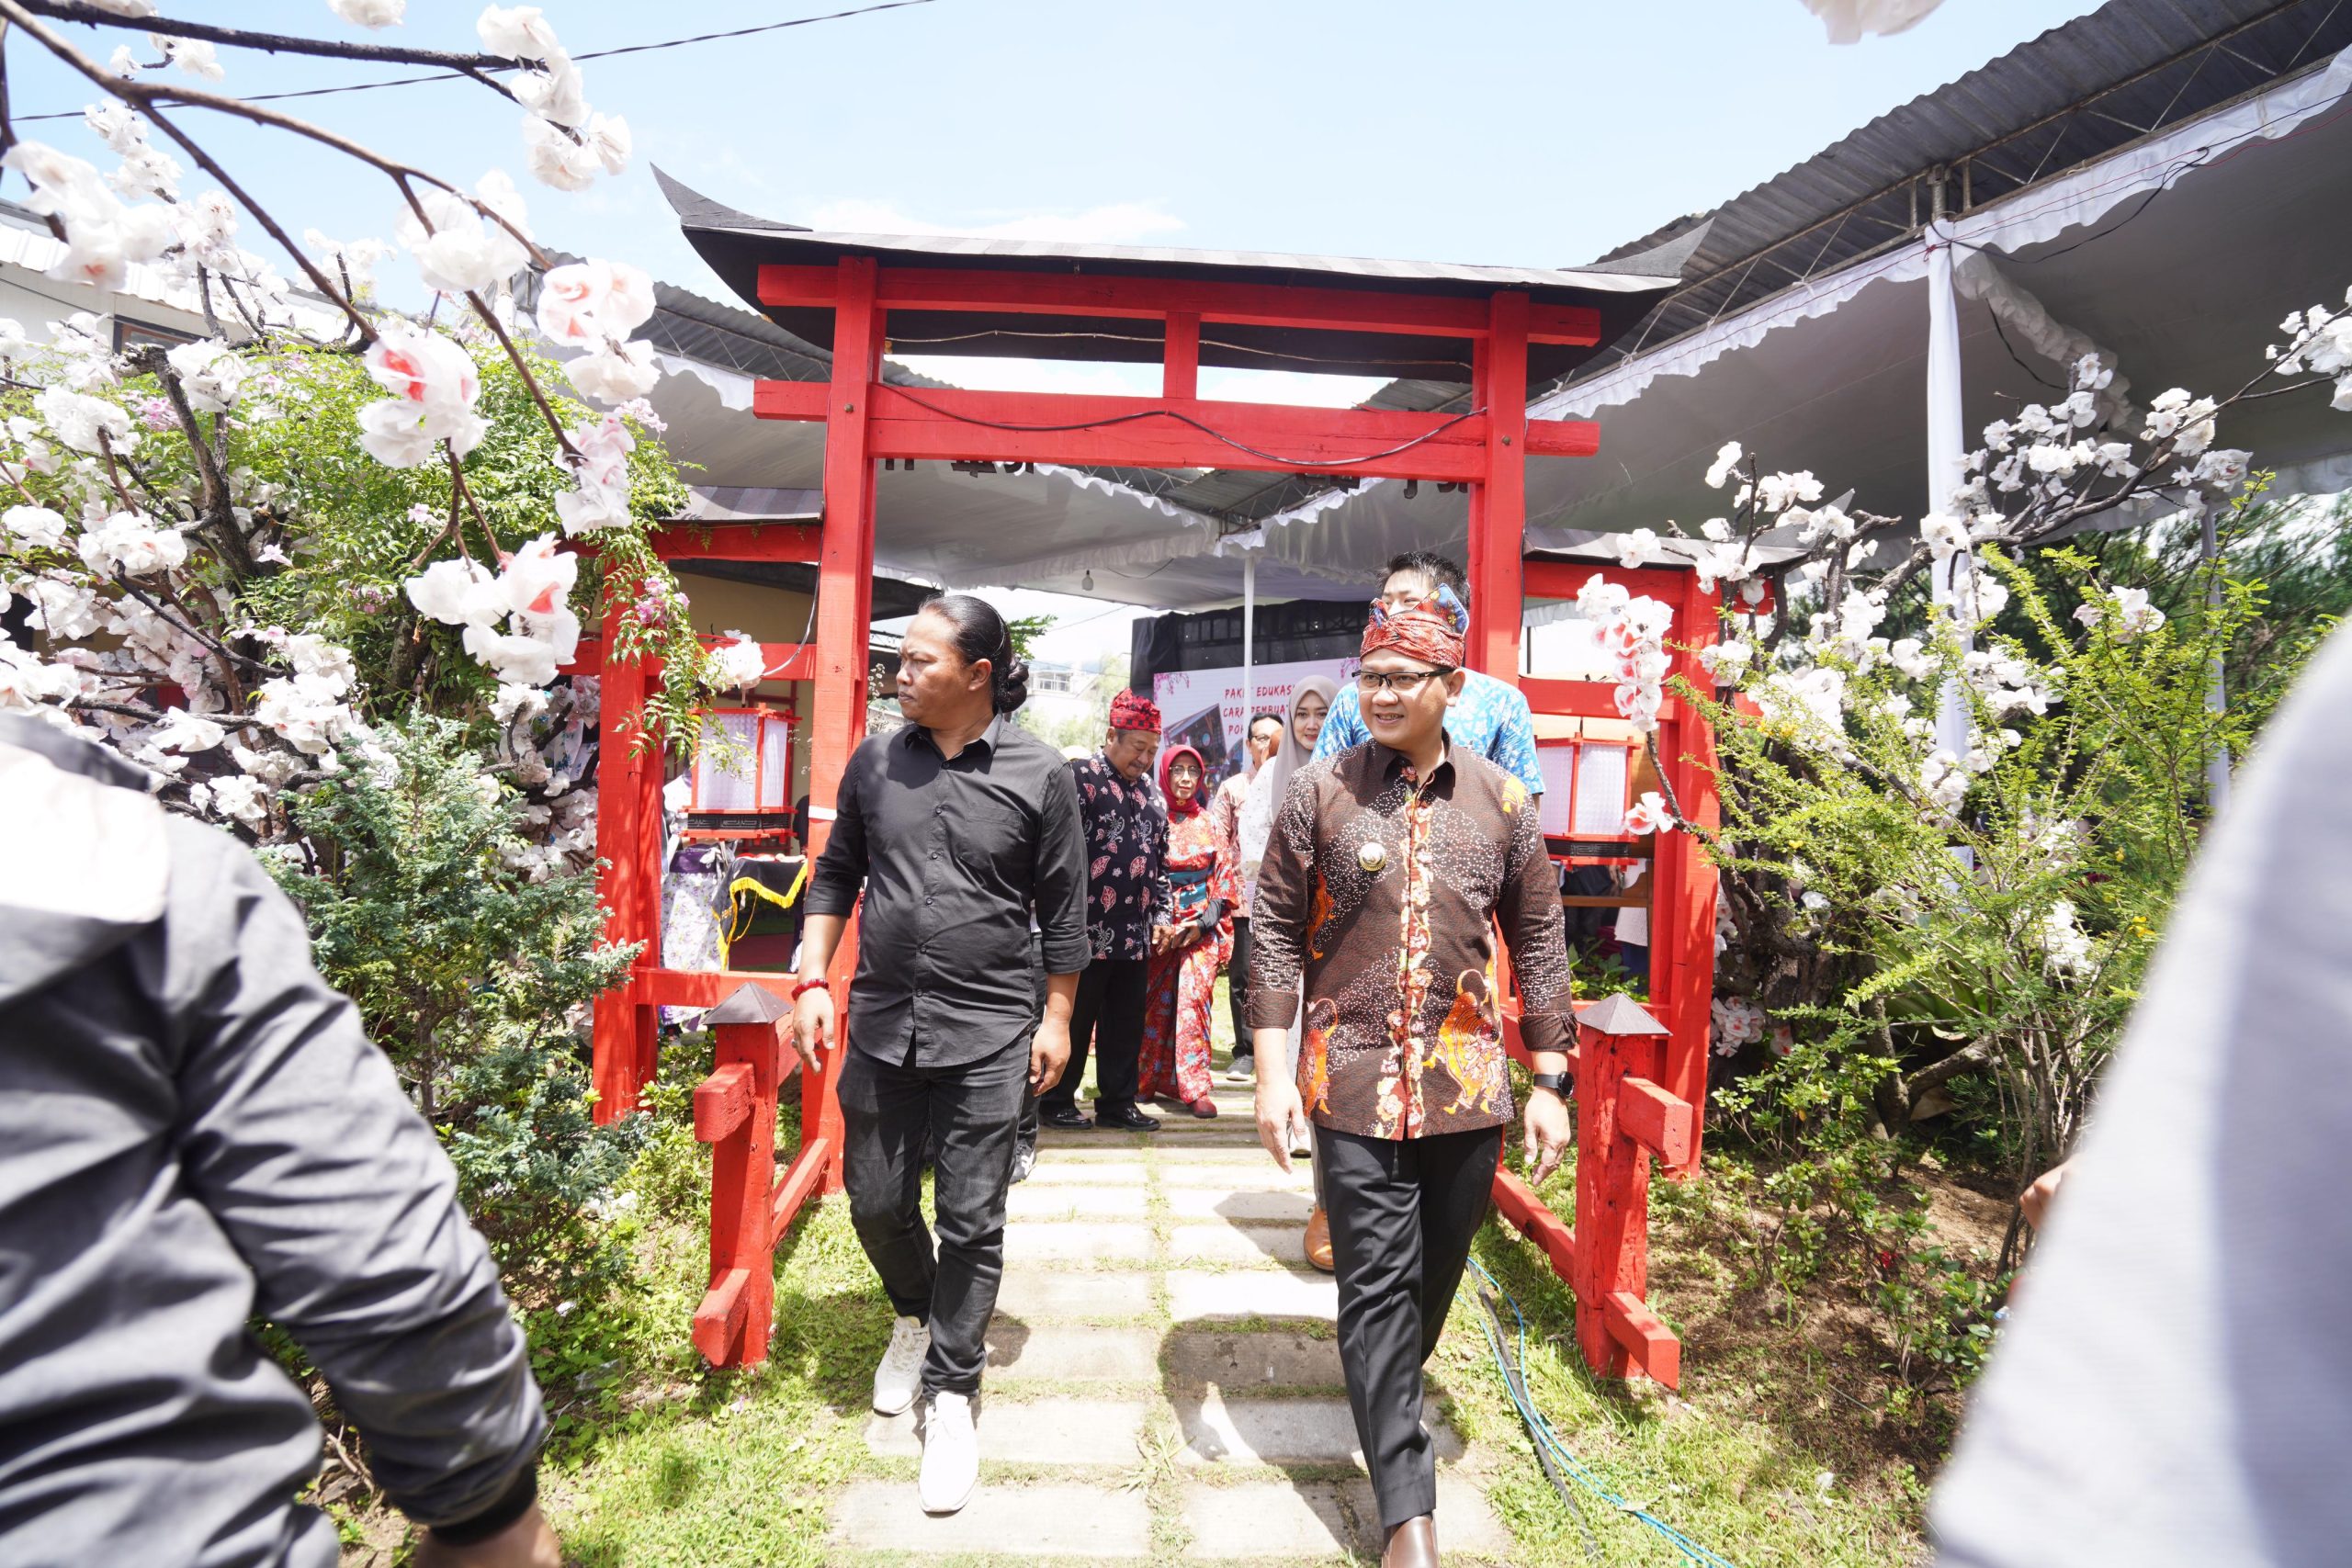 Festival Kampung Sakura Sidomulyo, Wujud Pertumbuhan Desa Wisata di Jatim